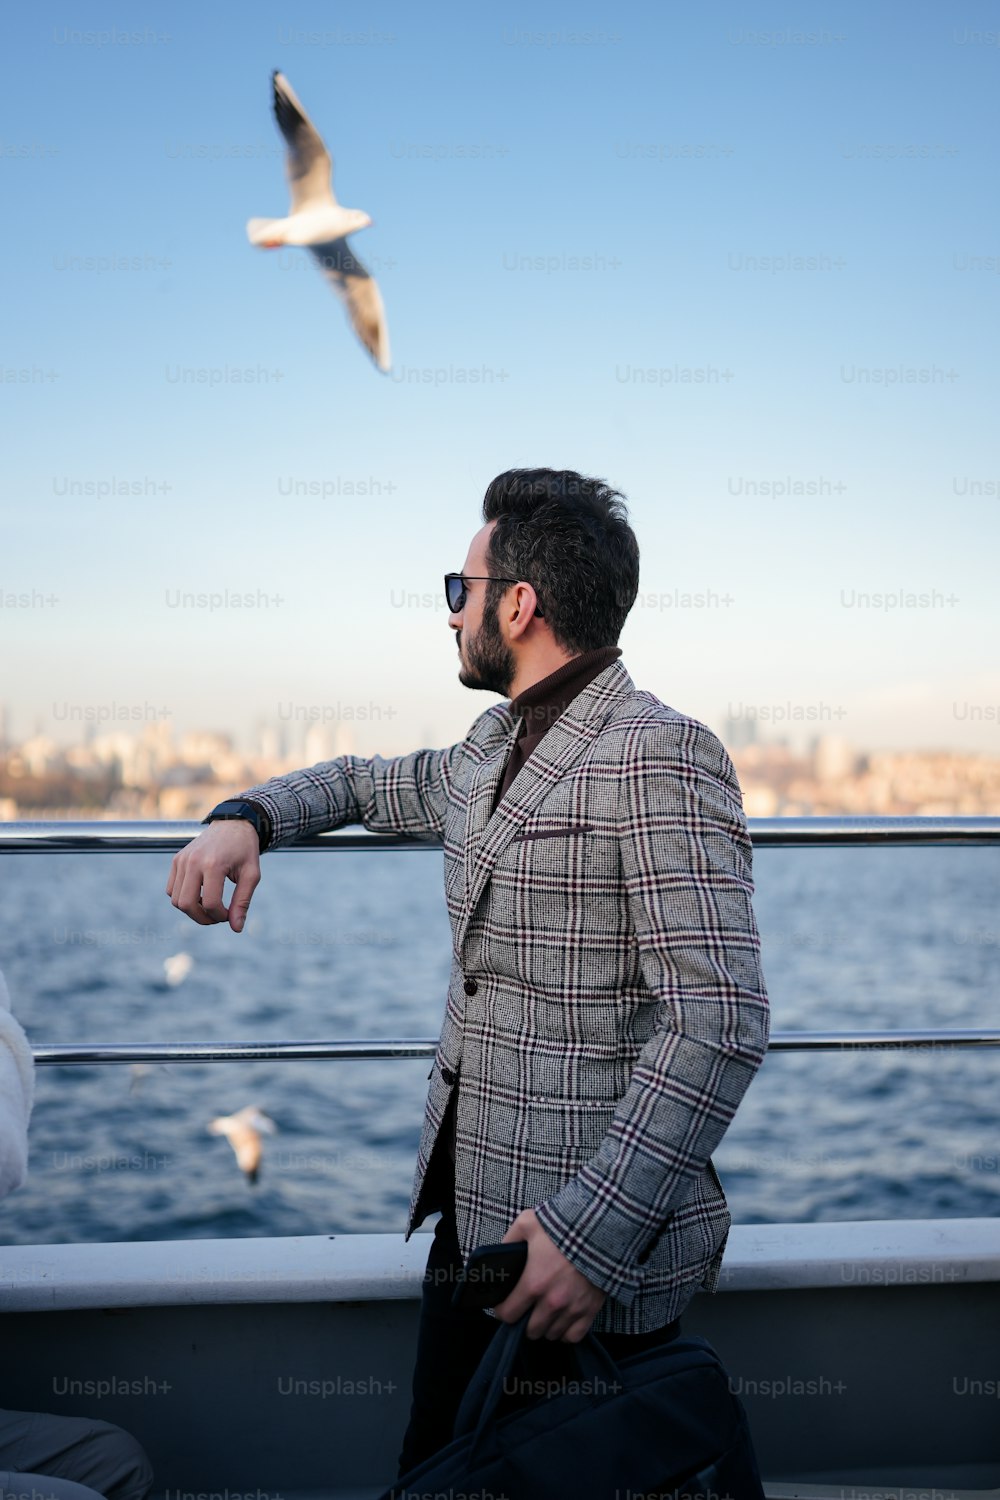 Un homme debout sur un bateau regardant une mouette